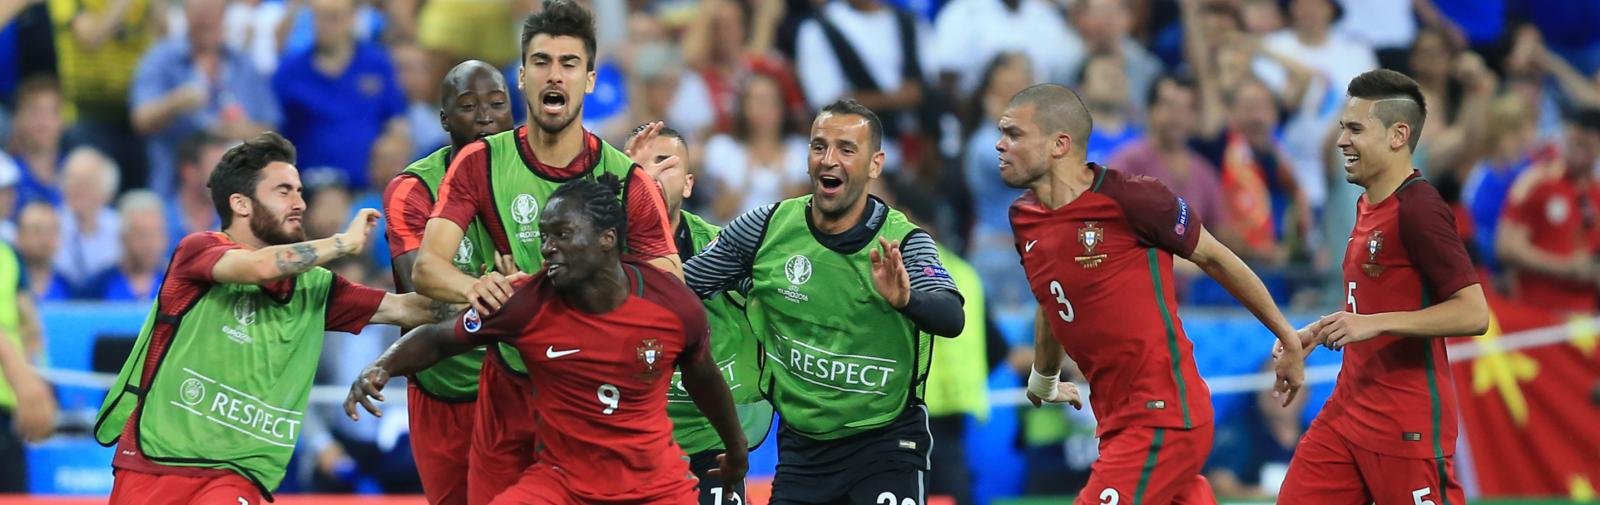 Profile: Portugal’s EURO 2016 final hero, Eder